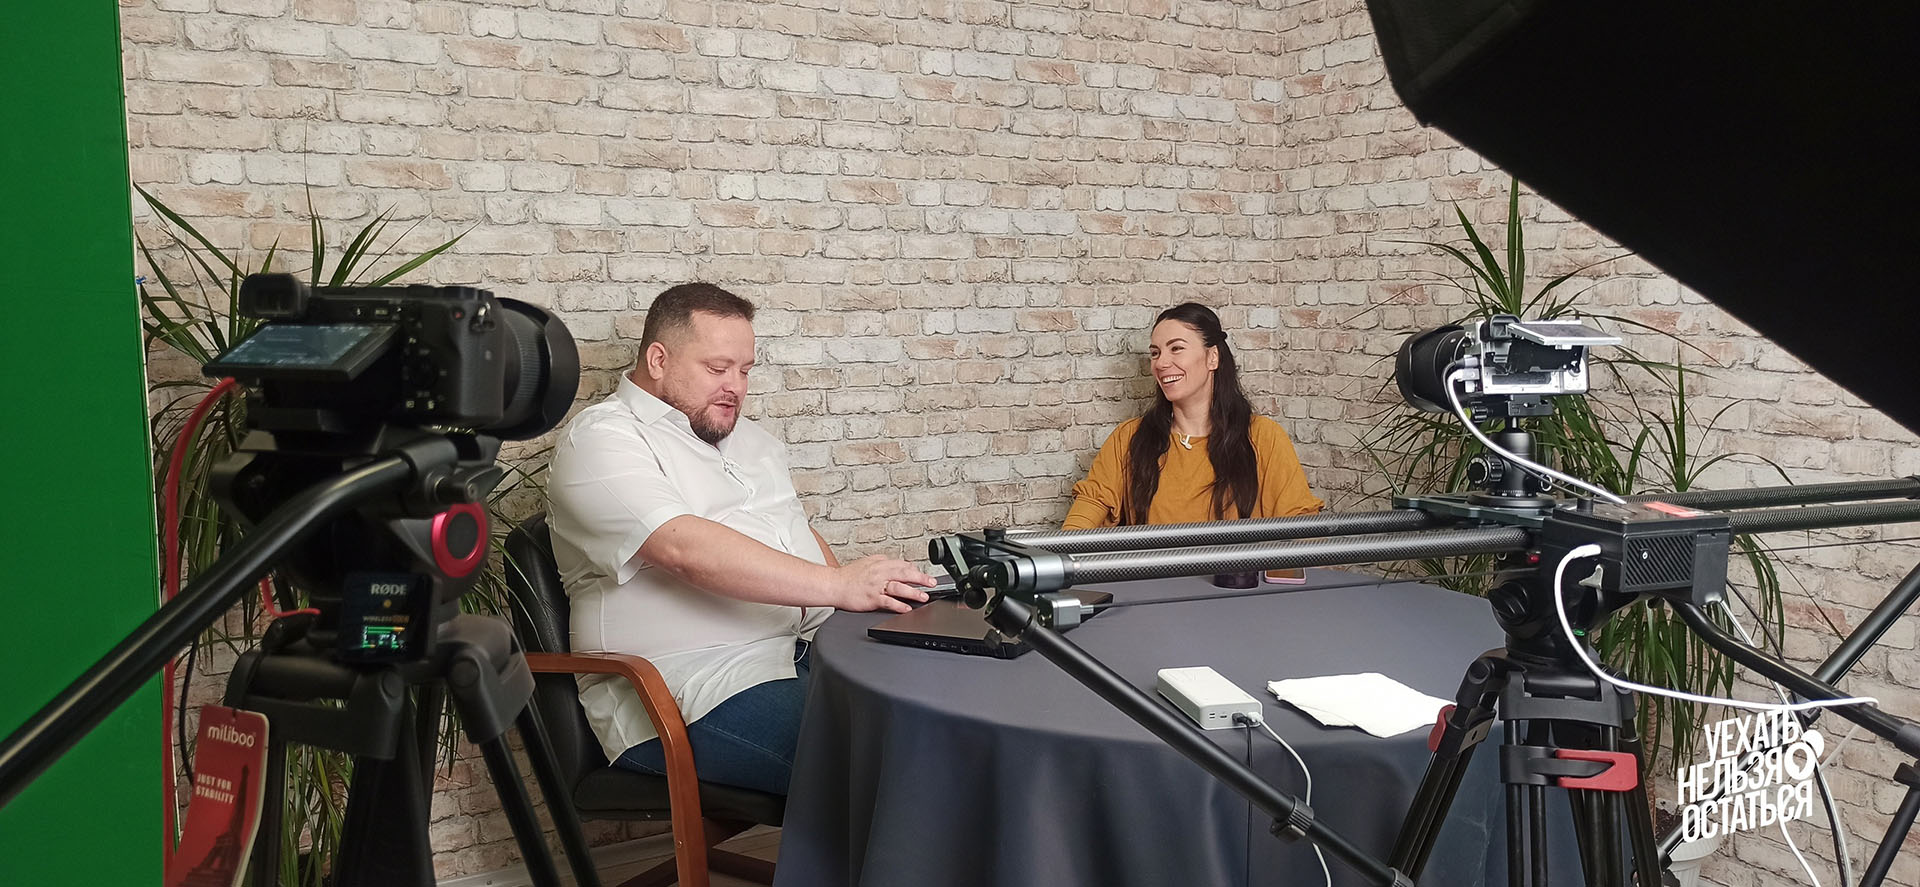 Роман Богатин и Ирина Соколовская, запись интервью для проекта